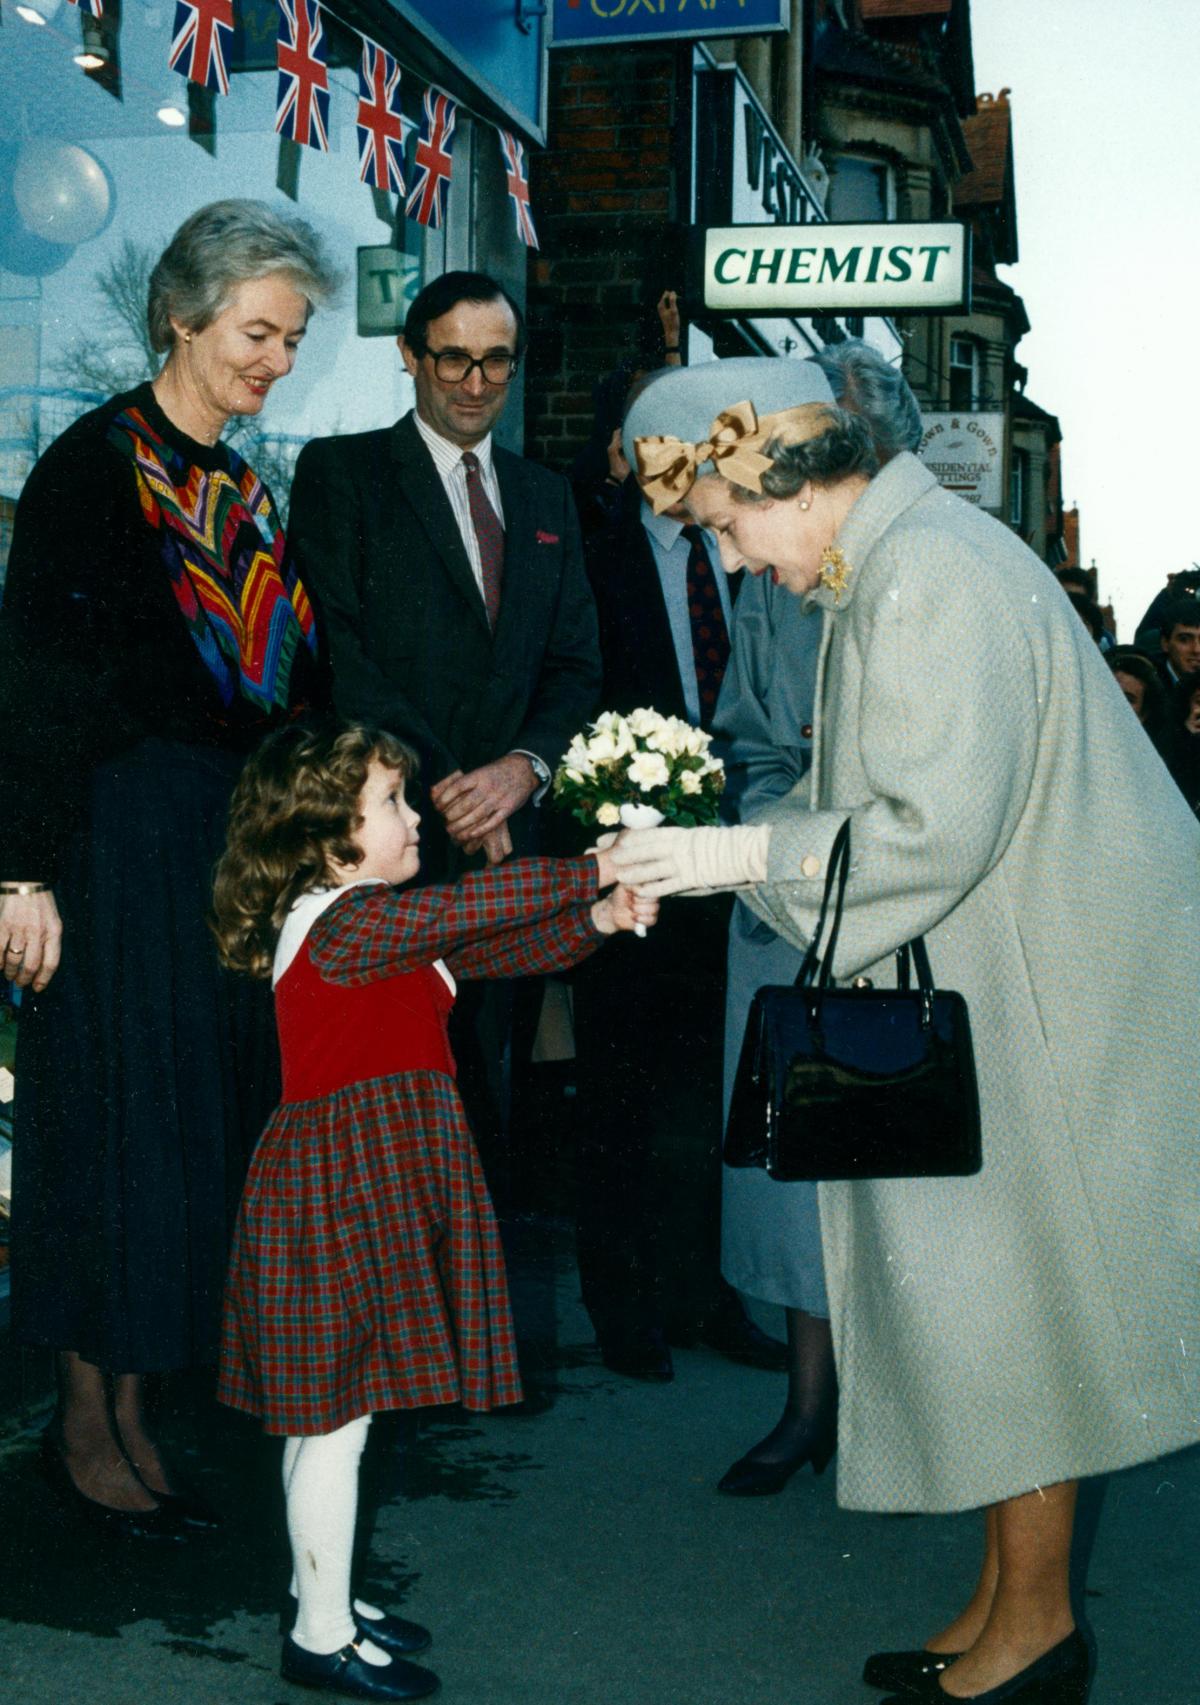 The Queen meets Oxfam volunteers in Summertown, Oxford, in December 1992.